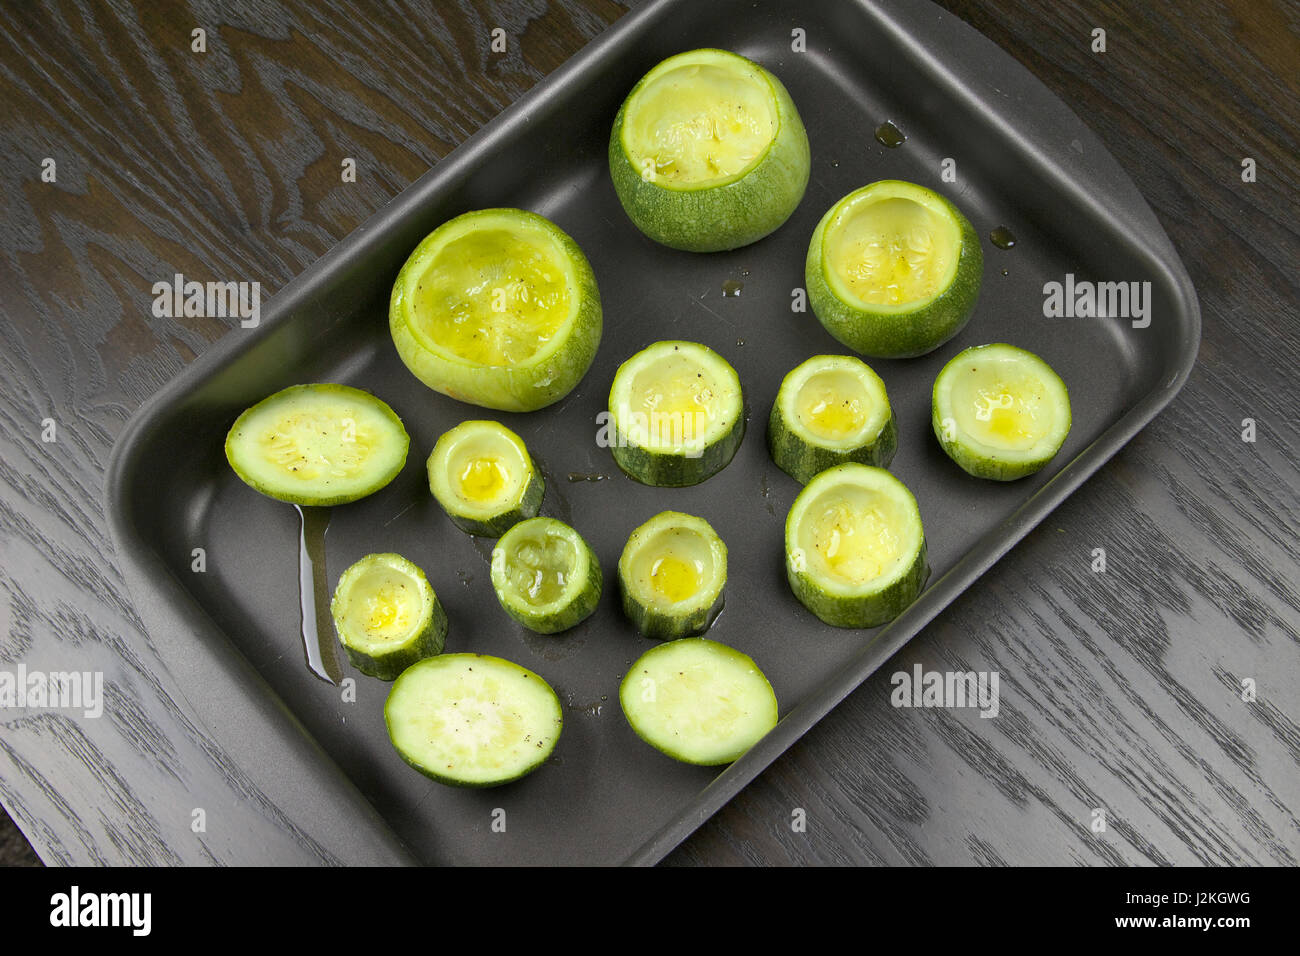 Entleerte Zucchini (Zucchini) in einer Auflaufform Zinn auf einem dunklen Holztisch liegend - gefüllte Zucchini Rezept Stockfoto